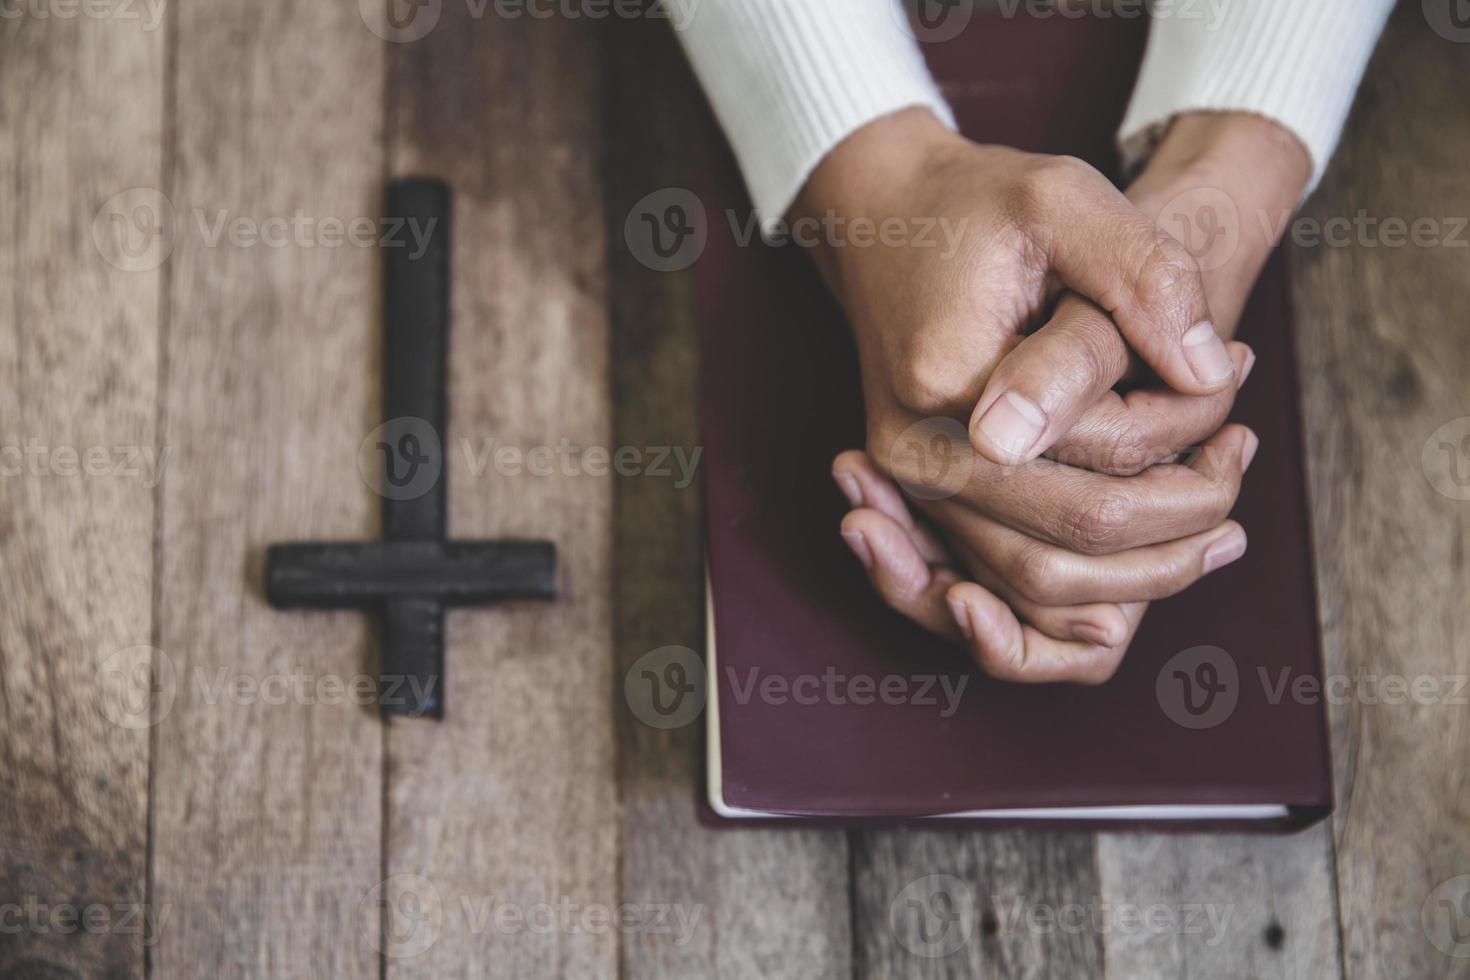 mãos dobradas no conceito de oração pela fé, jovem religiosa orando a Deus pela manhã, espiritualidade e religião, conceitos religiosos. foto